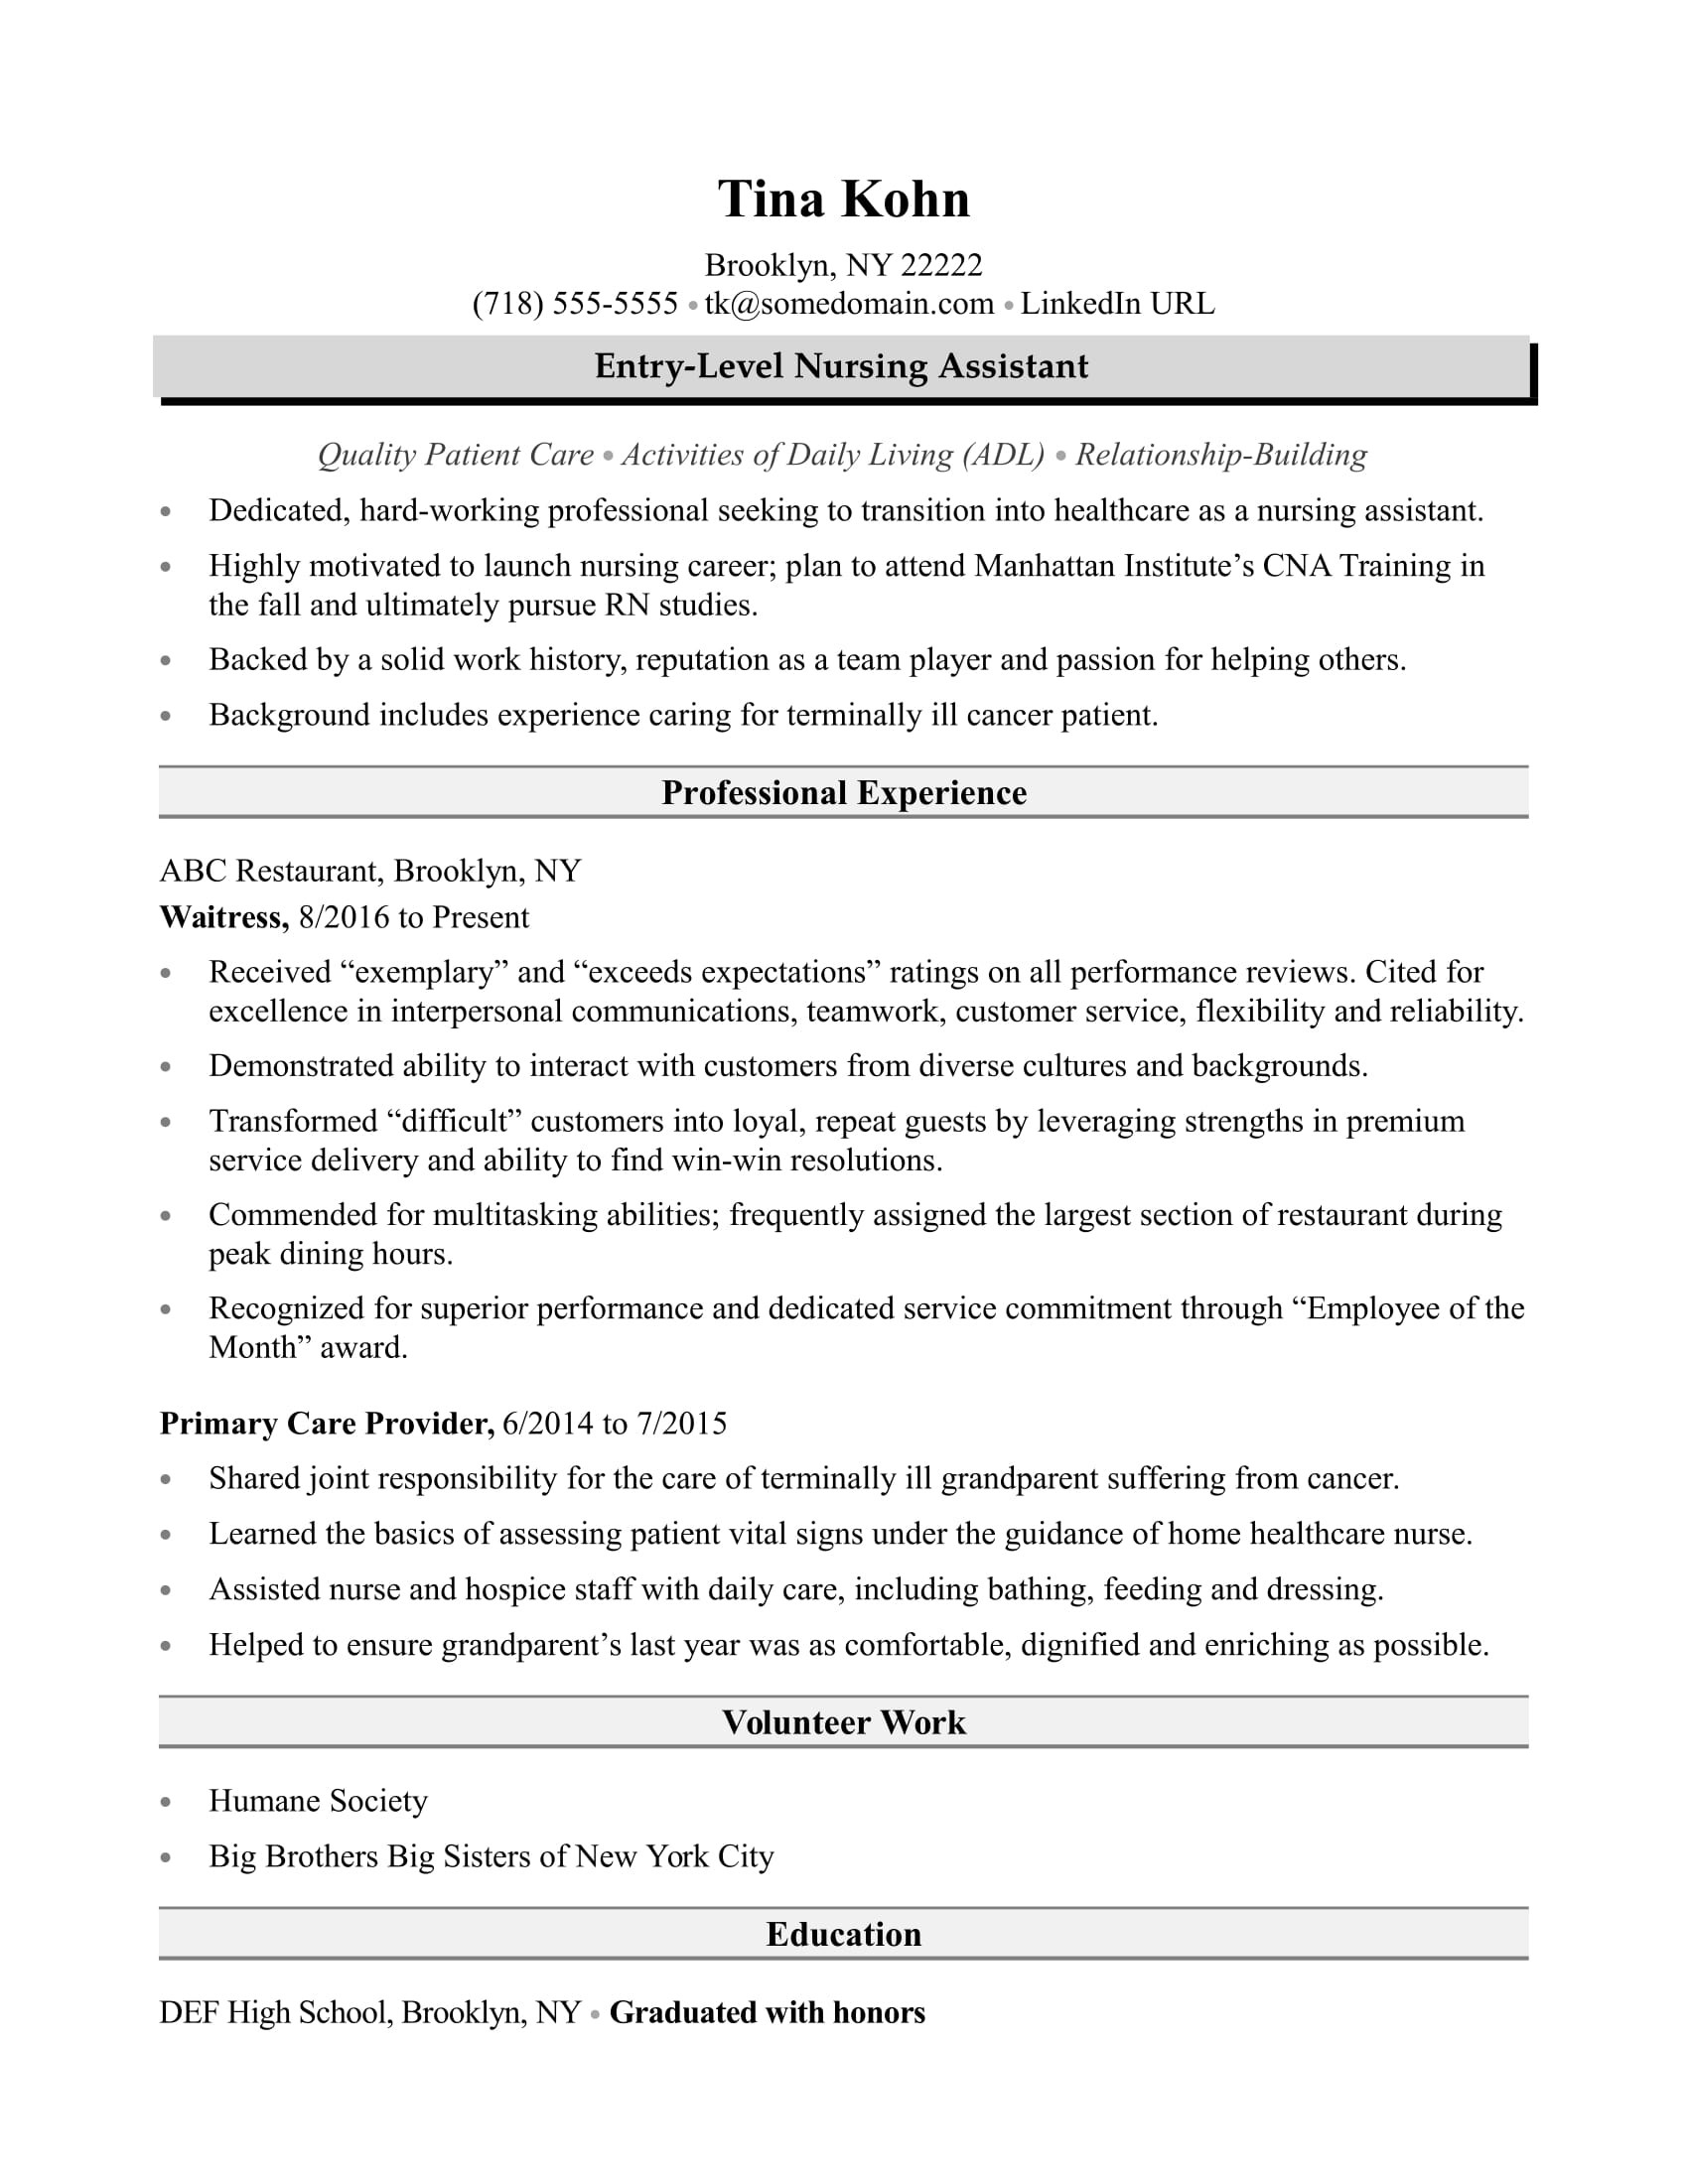 Find Sample Resume for Nursing assistant with No Experience Nursing assistant Resume Sample Monster.com